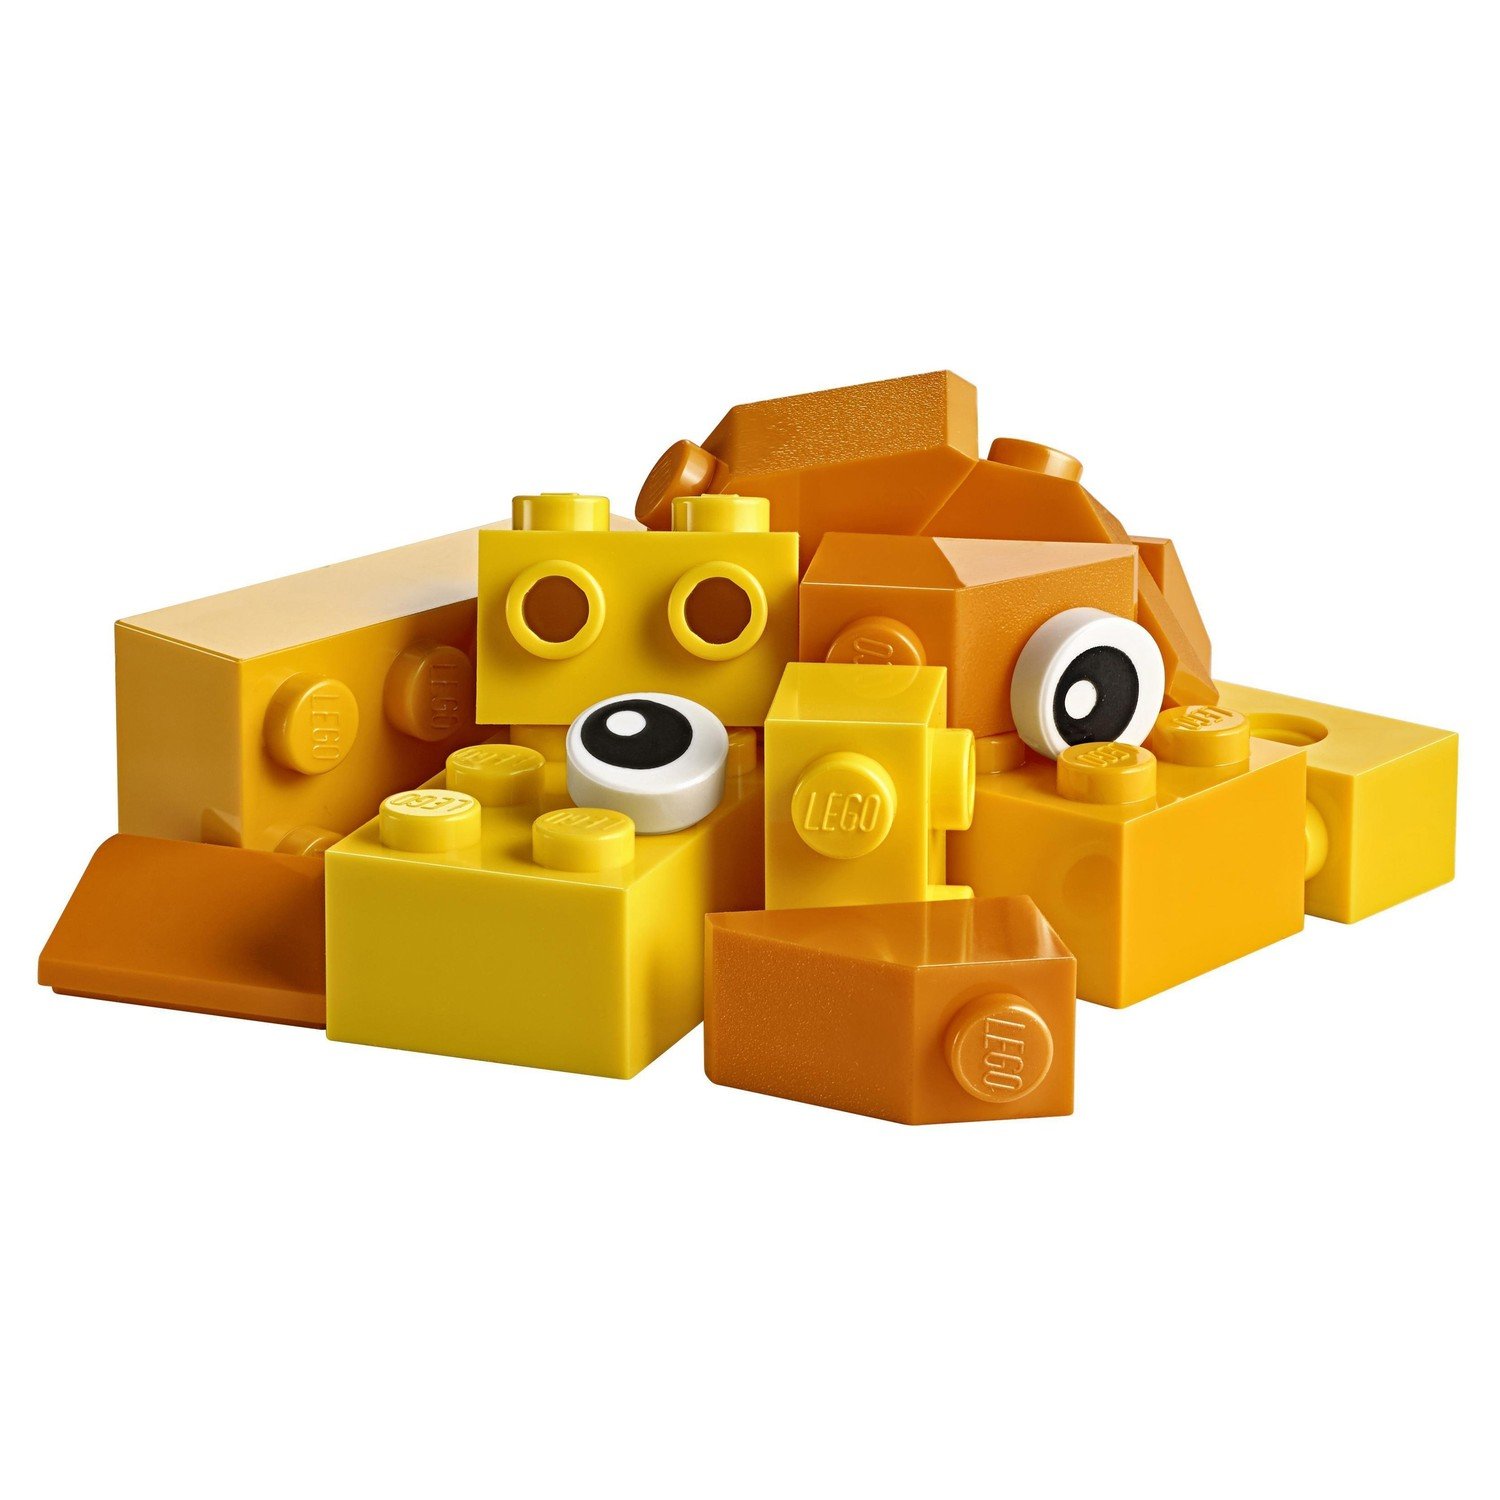 Конструктор LEGO Чемоданчик для творчества и конструирования Classic (10713) - фото 8